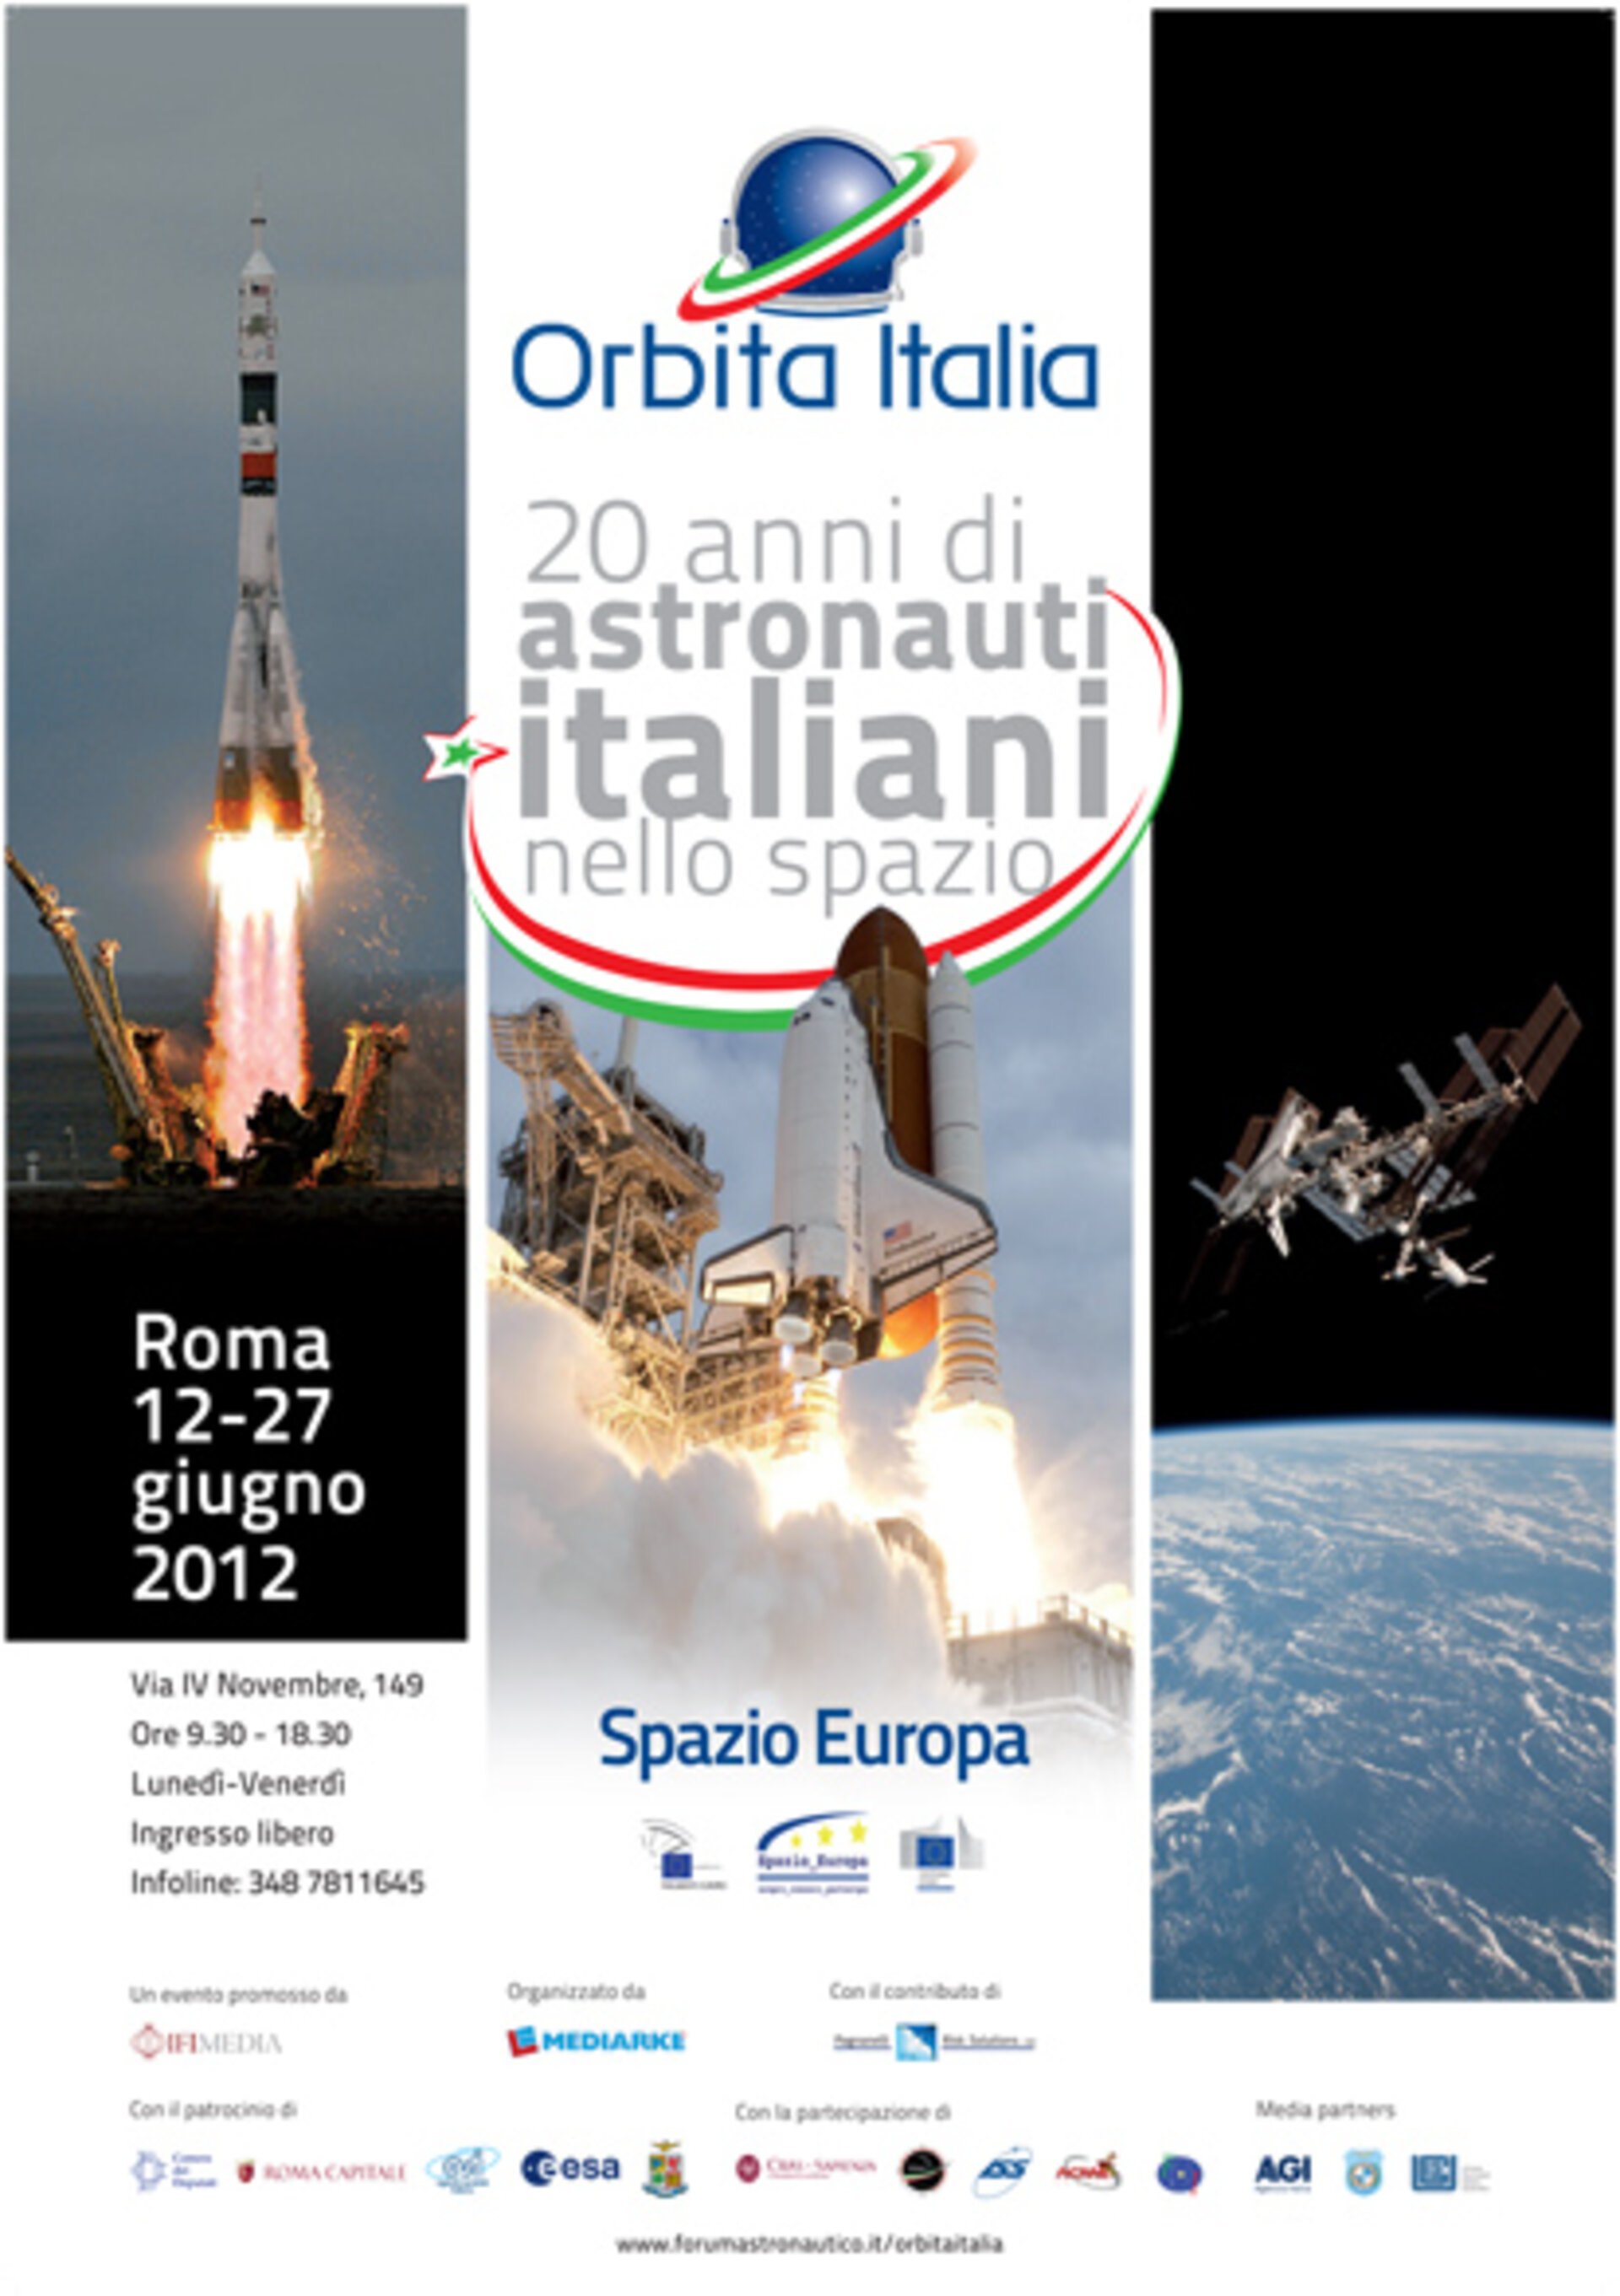 Locandina dell' evento Orbita Italia, Roma 12-27 giugno 2012